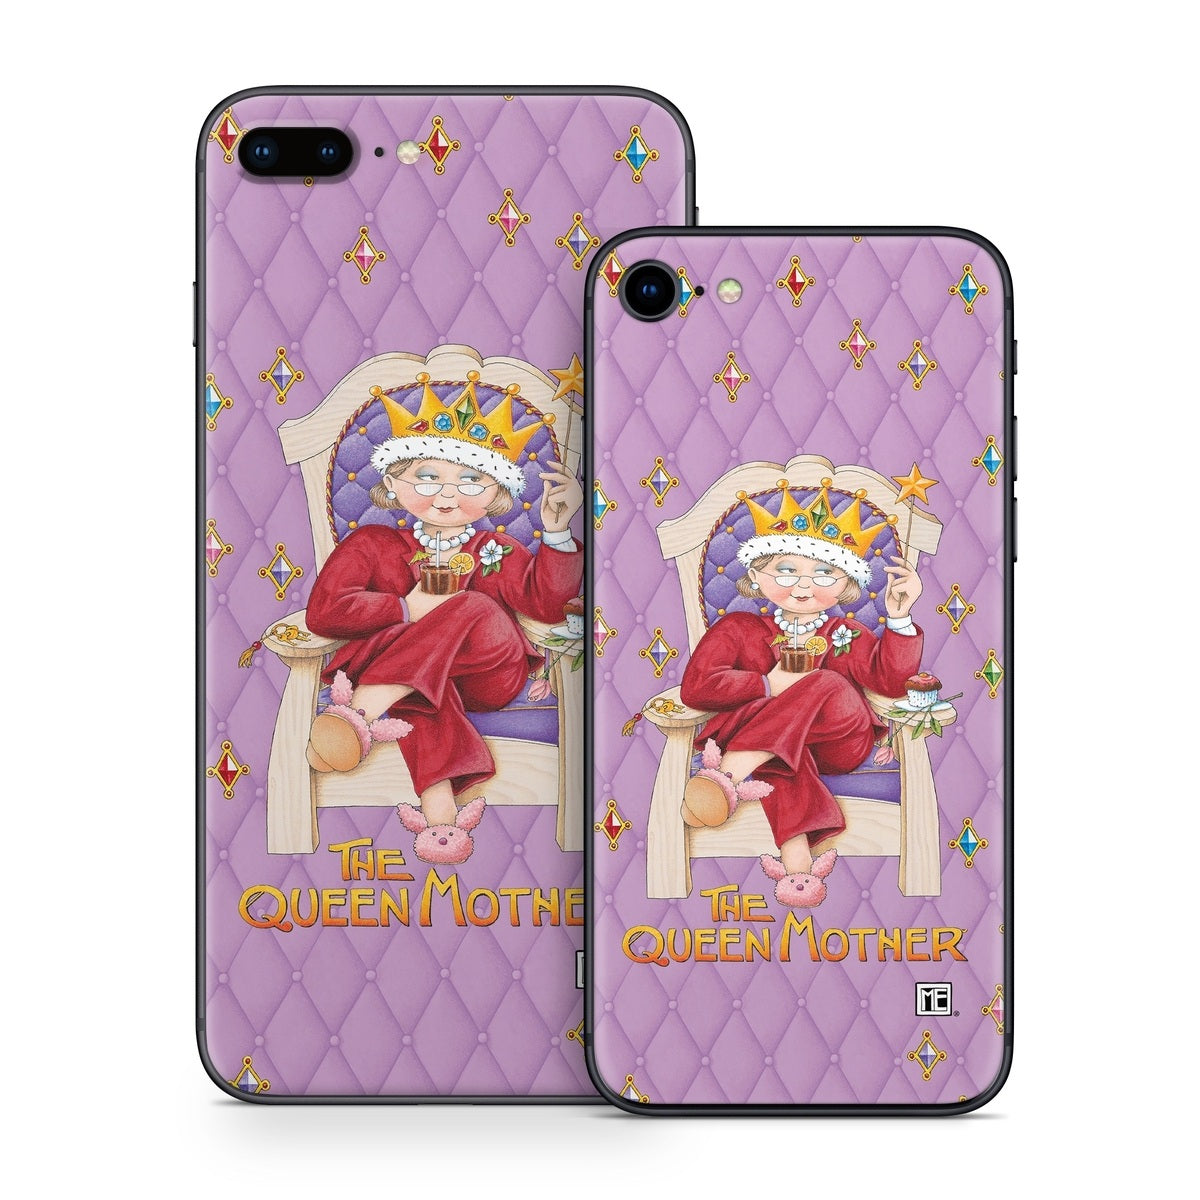 Queen Mother - Apple iPhone 8 Skin